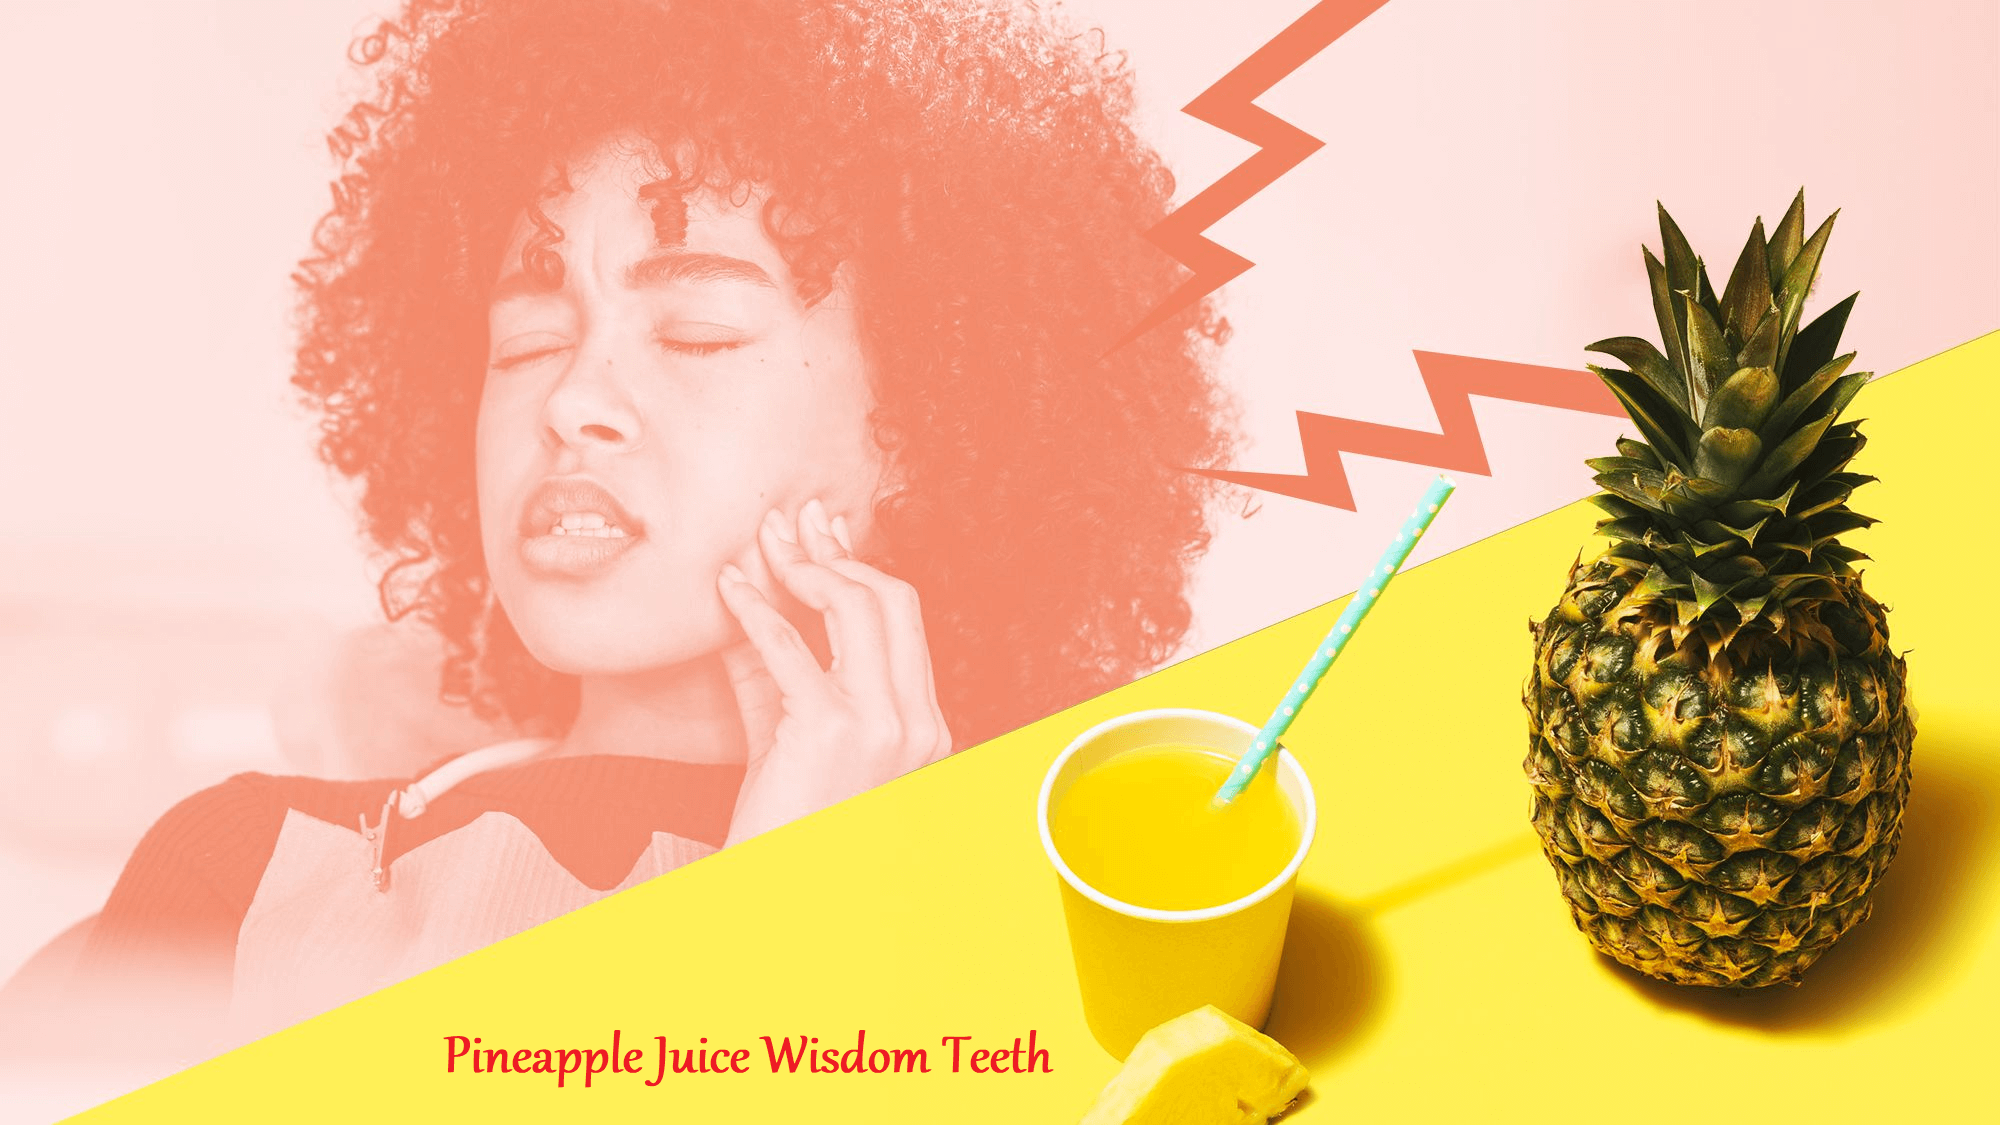 Pineapple Juice Wisdom Teeth